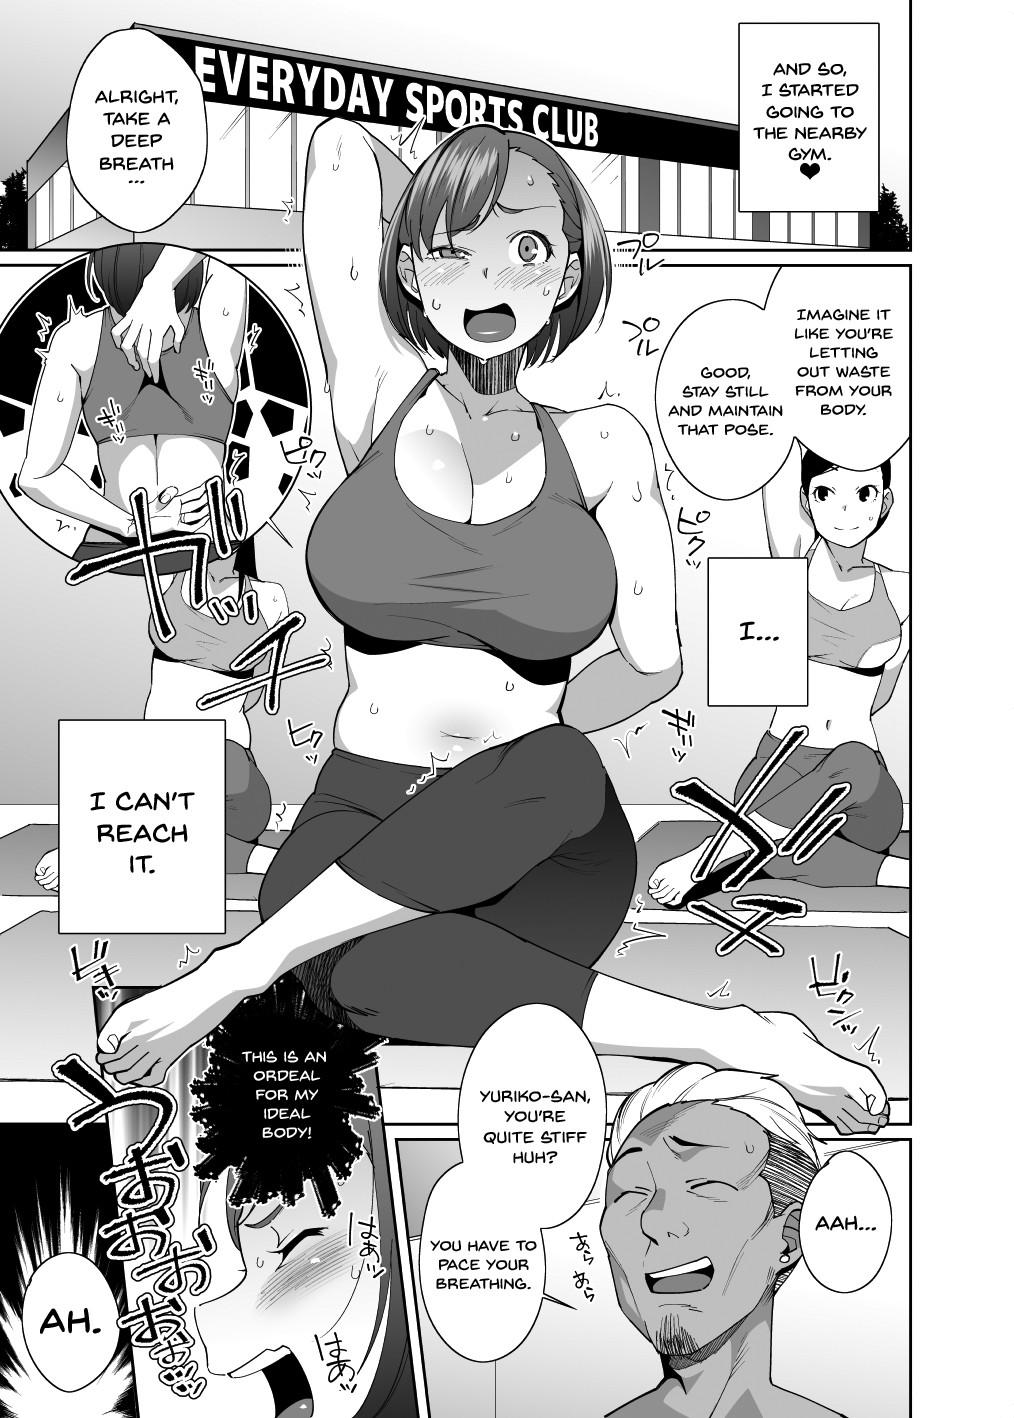 NTR-Sexersise Page 9 Of 32 original hentai manga, NTR-Sexersise Page 9 Of 3...